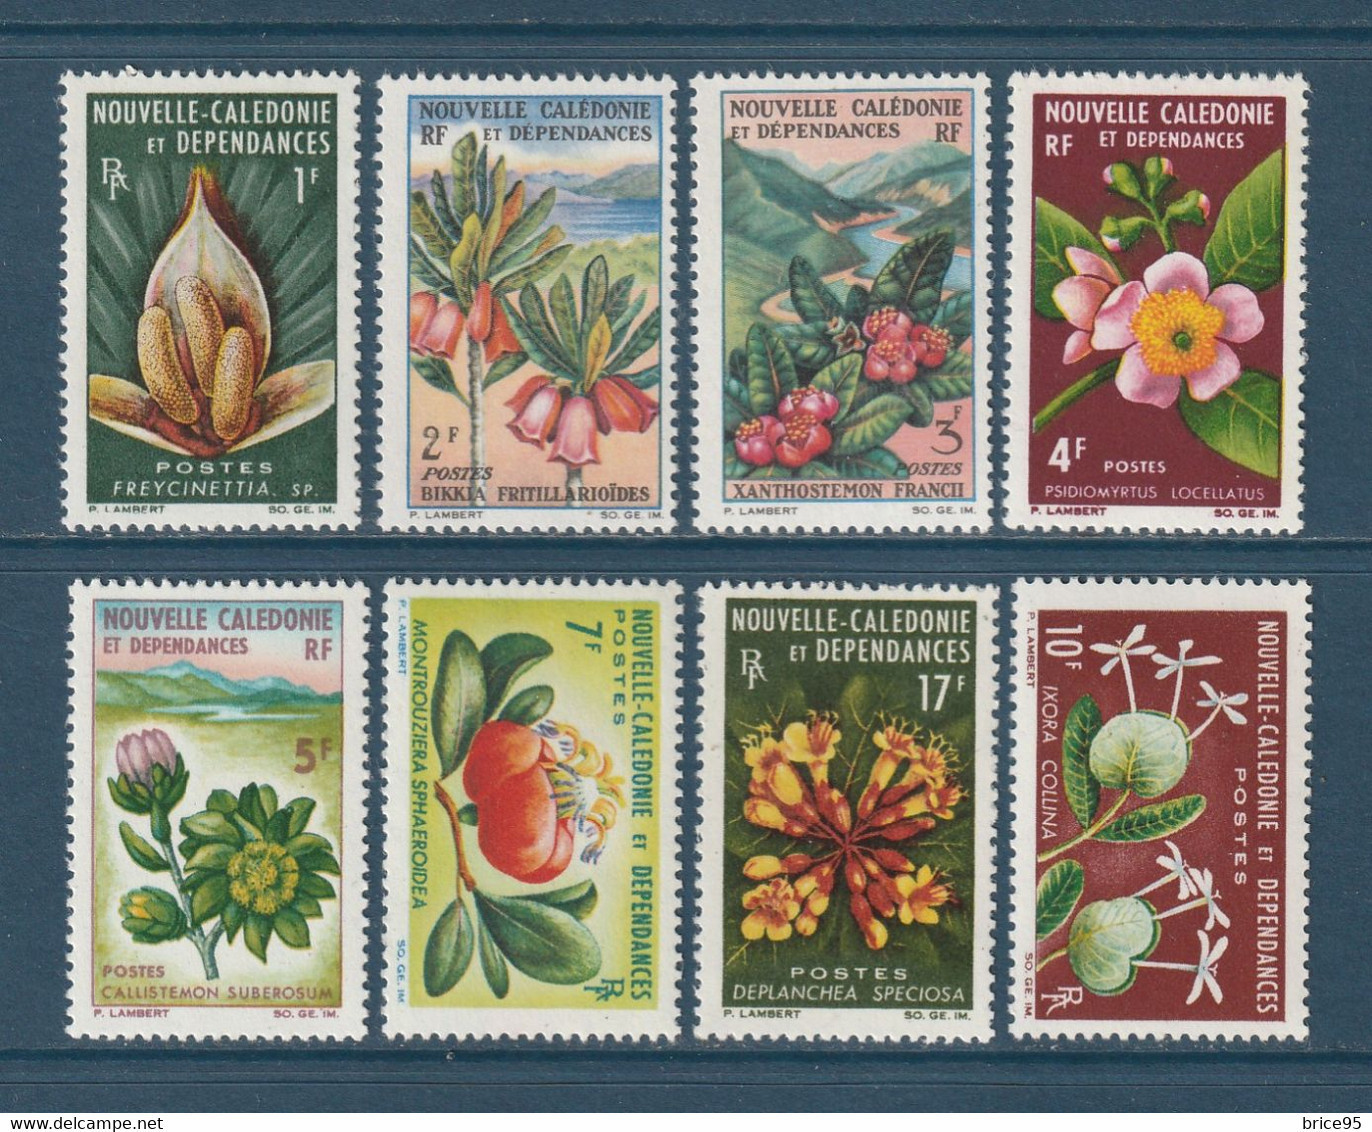 Nouvelle Calédonie - YT N° 314 à 321 * - Neuf Avec Charnière - 1964 à 1965 - Unused Stamps